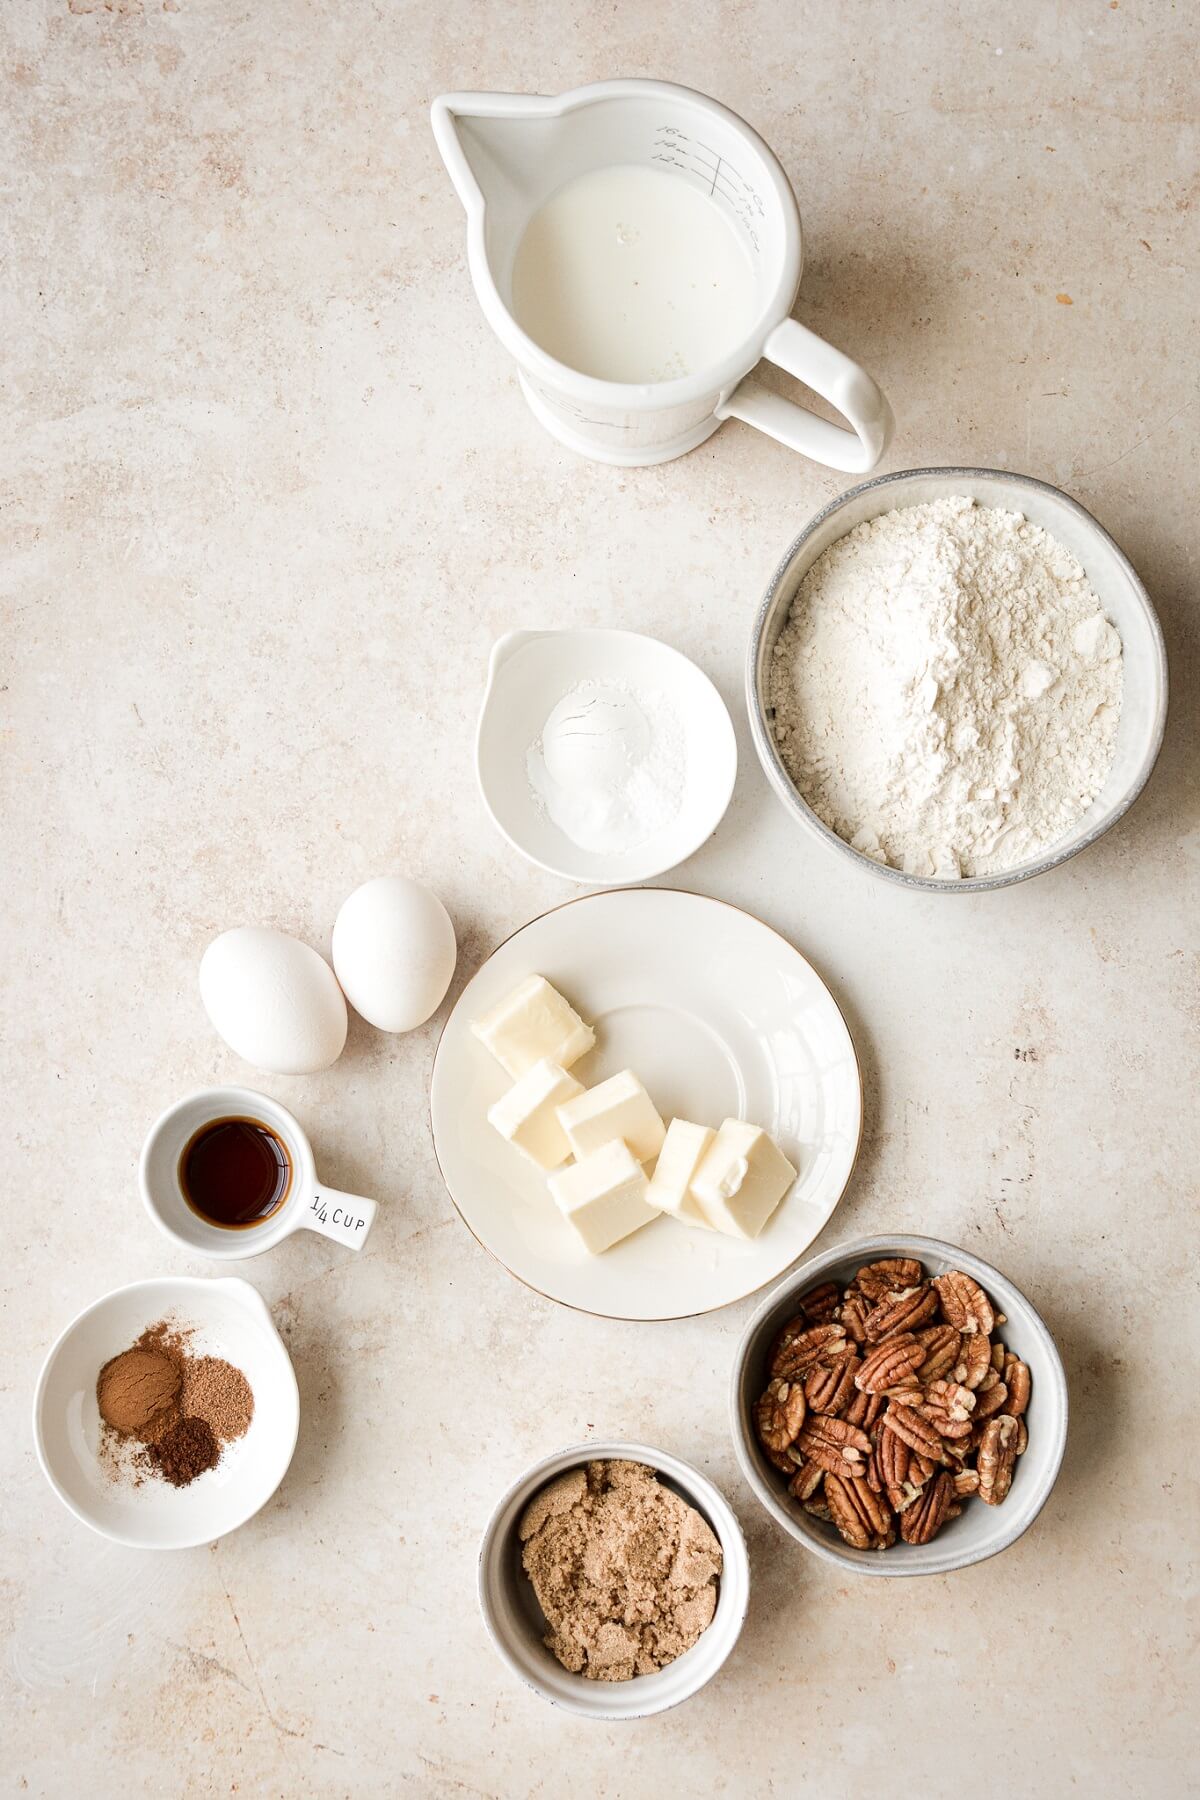 Ingredients for making butter pecan pancakes.